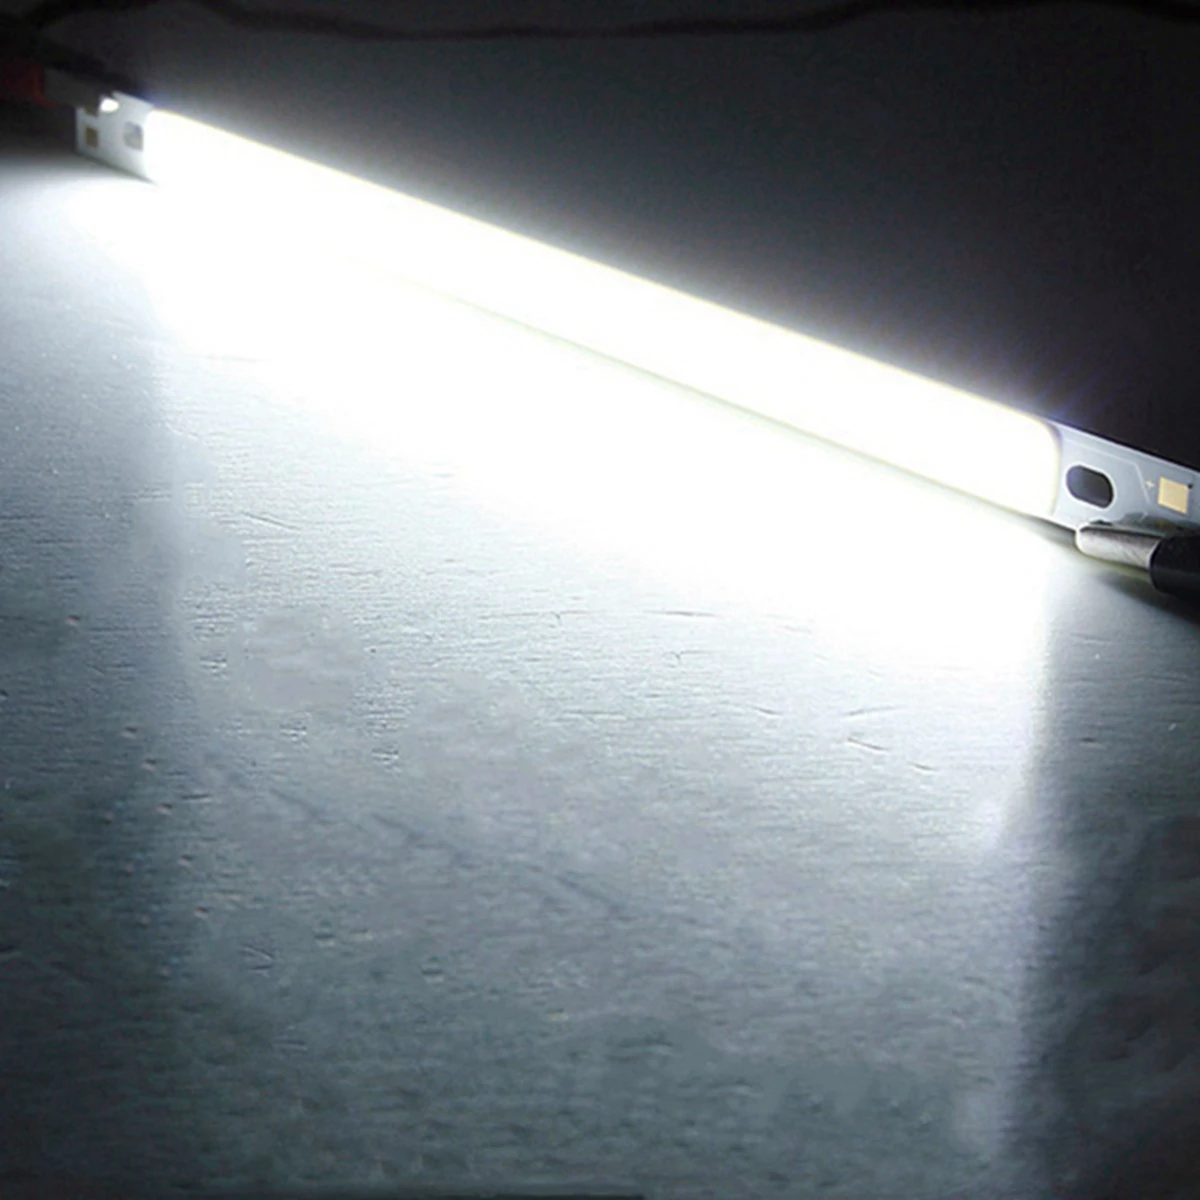 10 Вт сов монолитный блок светодиодов Светодиодные полосы Бар свет лампы светильник-прожектор заливающего света чистый белый теплый белый 1000LM для DIY освещения 200x10 мм DC12-24V - Испускаемый цвет: Pure White